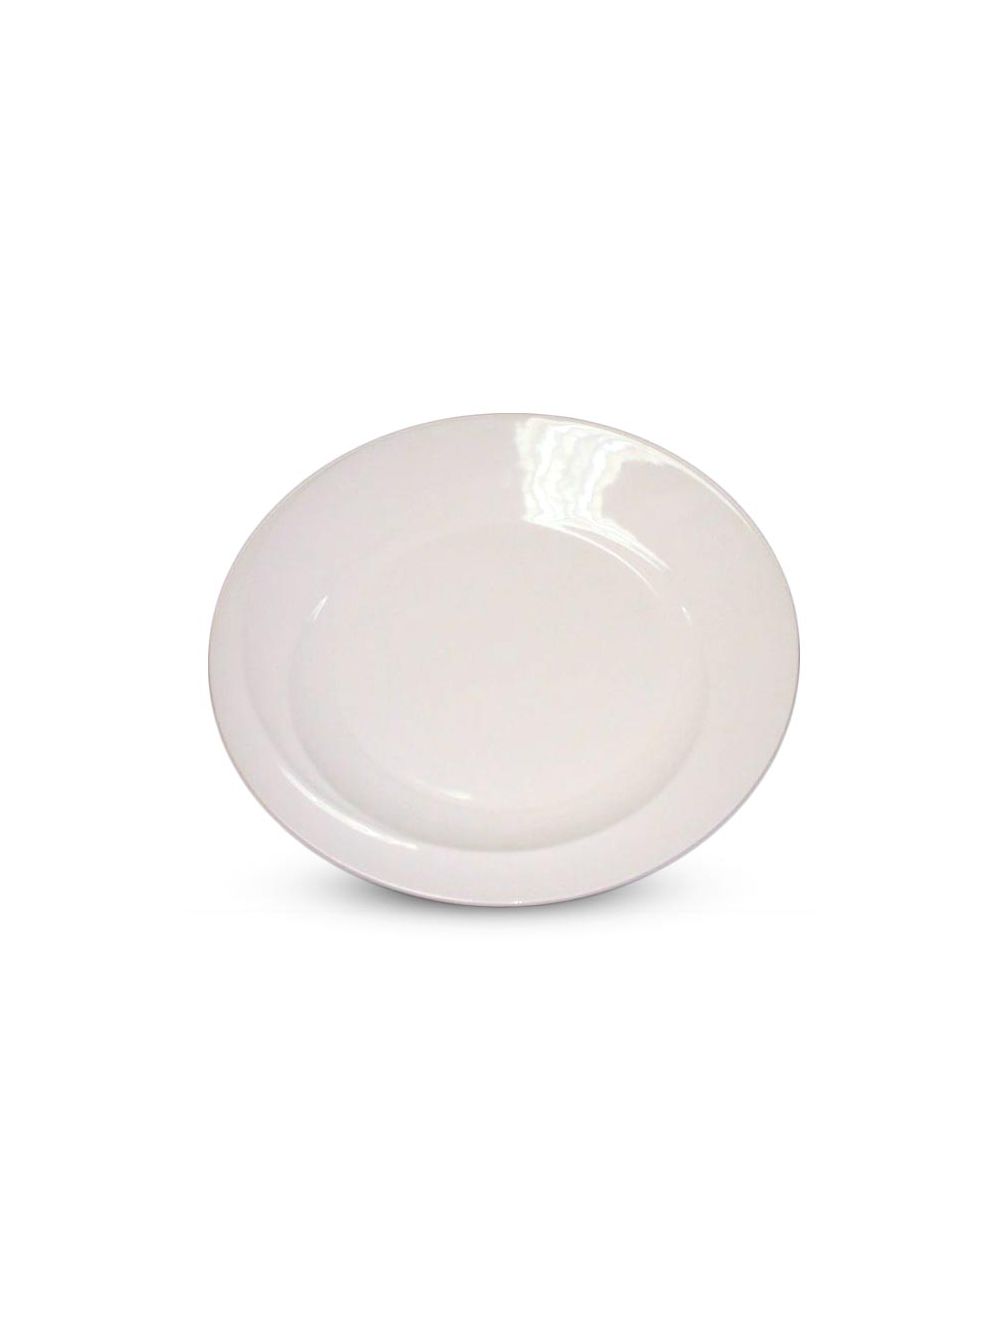 Qualitier Round Platter - White 30 cm